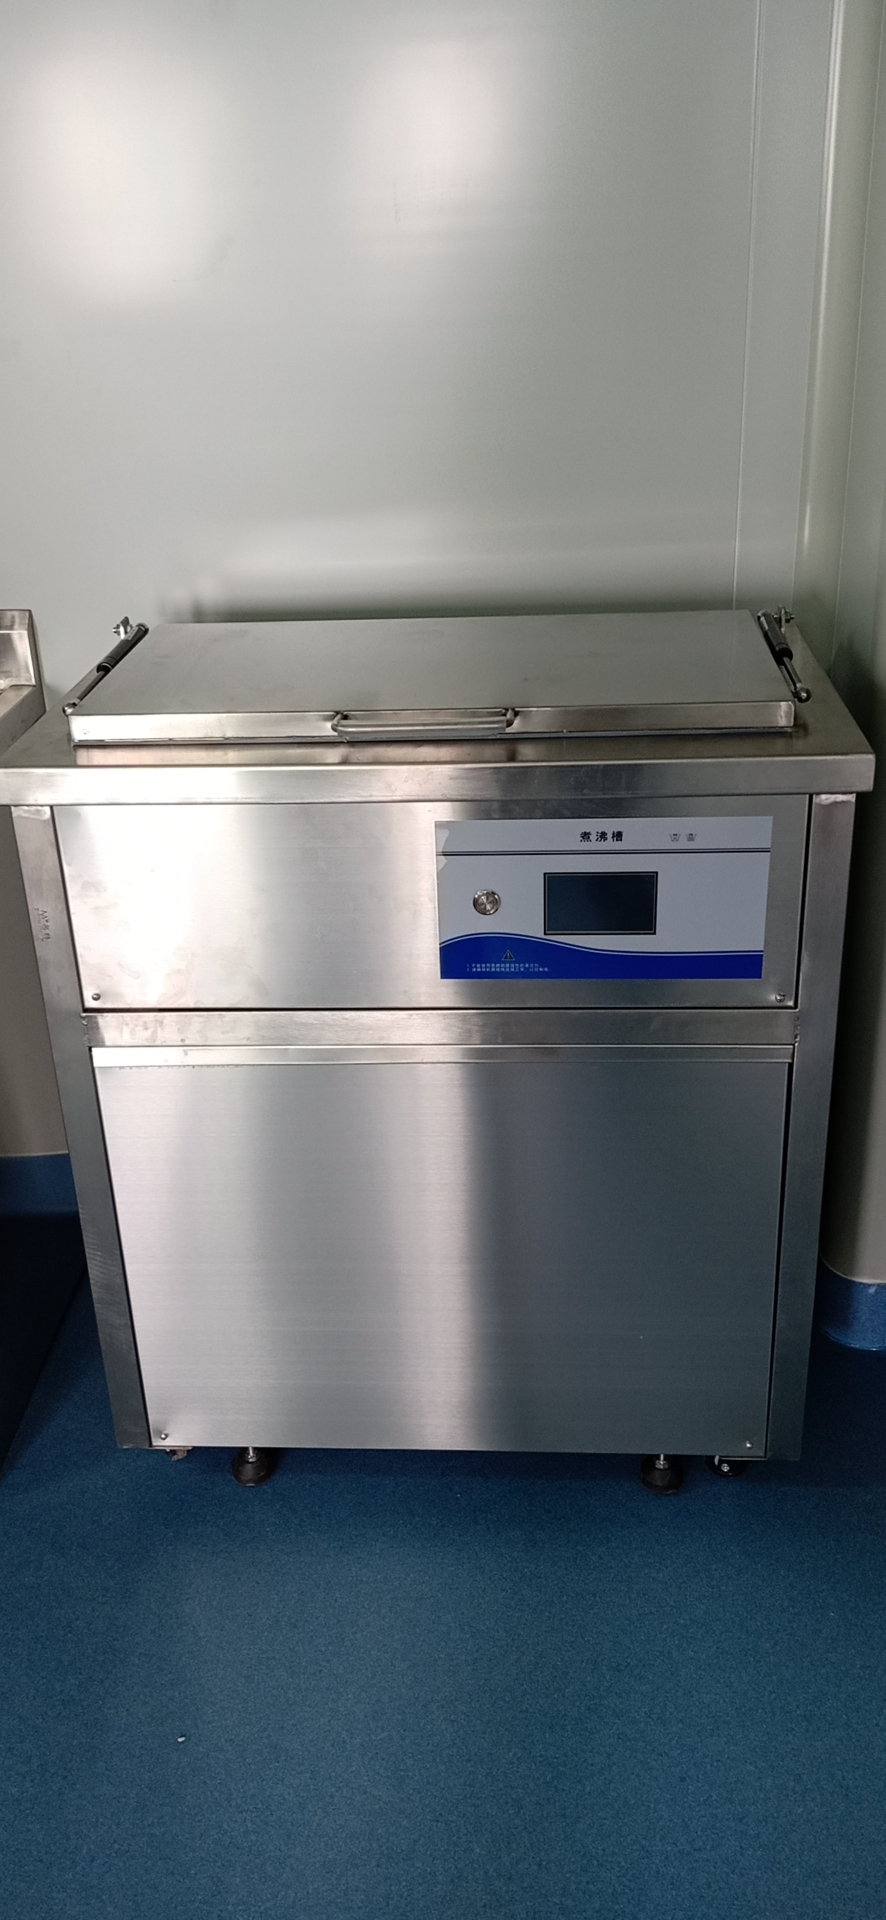 新瑞煮沸机液晶显示工作时间、温度等工作流程